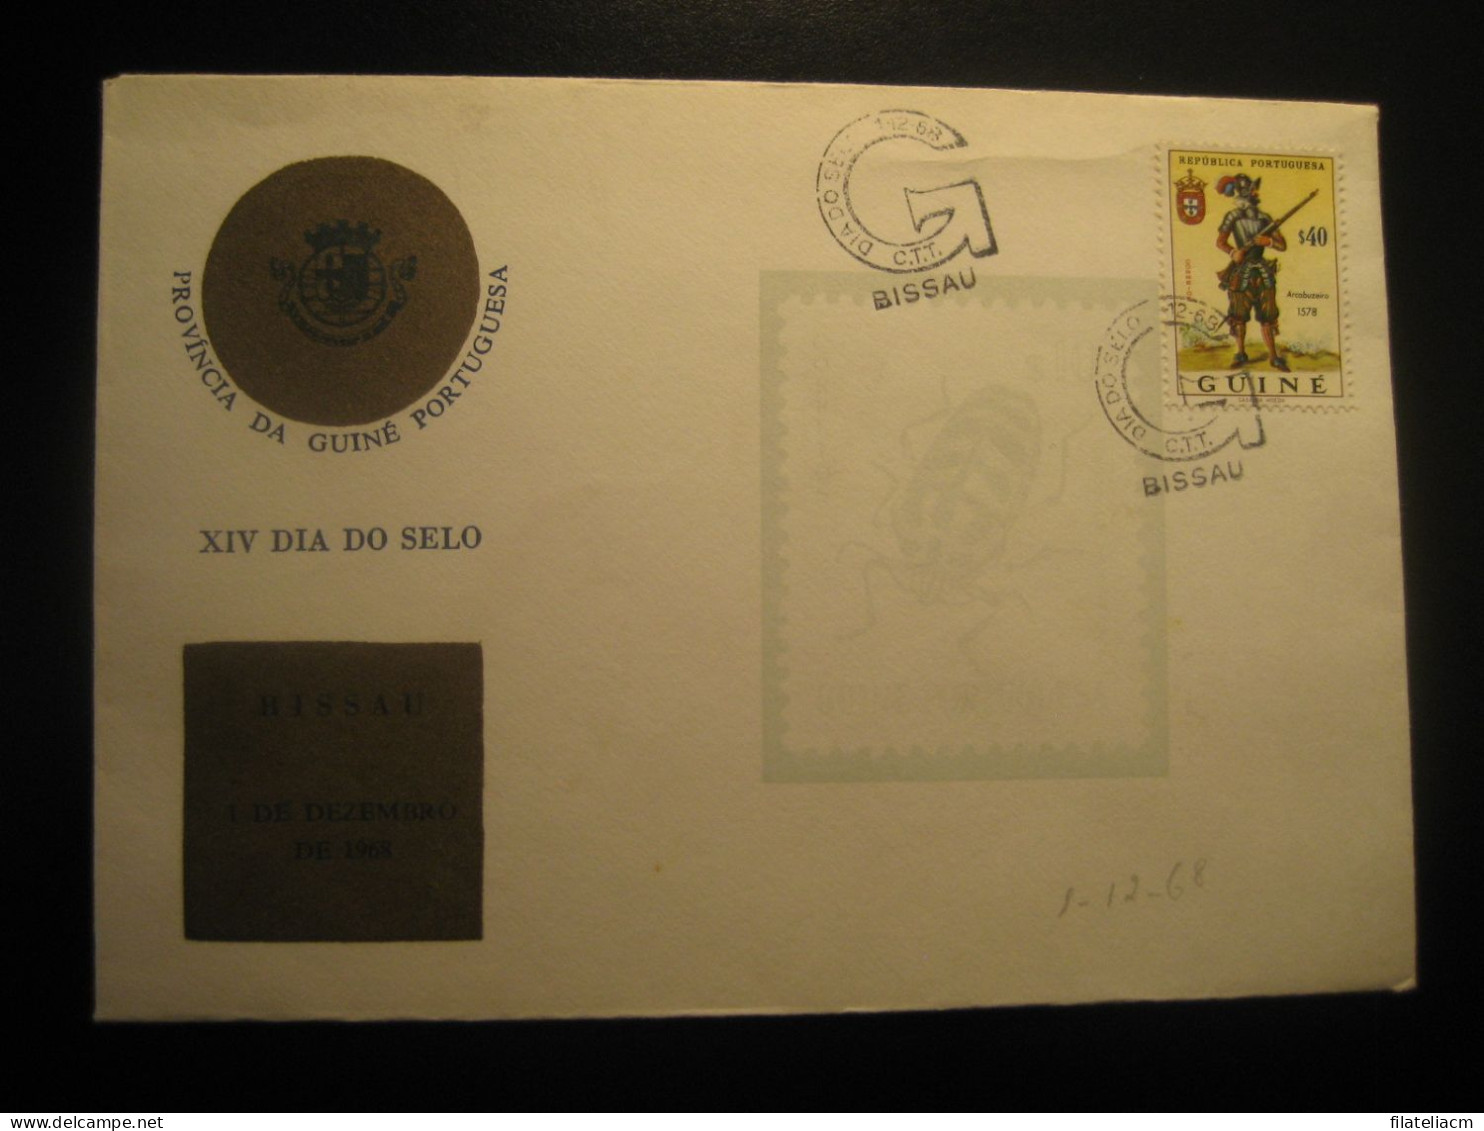 BISSAU 1968 Arcabuzeiro Stamp Dia Do Selo Cancel Cover GUINEA Portuguese Colonies Portugal Area - Portugees Guinea